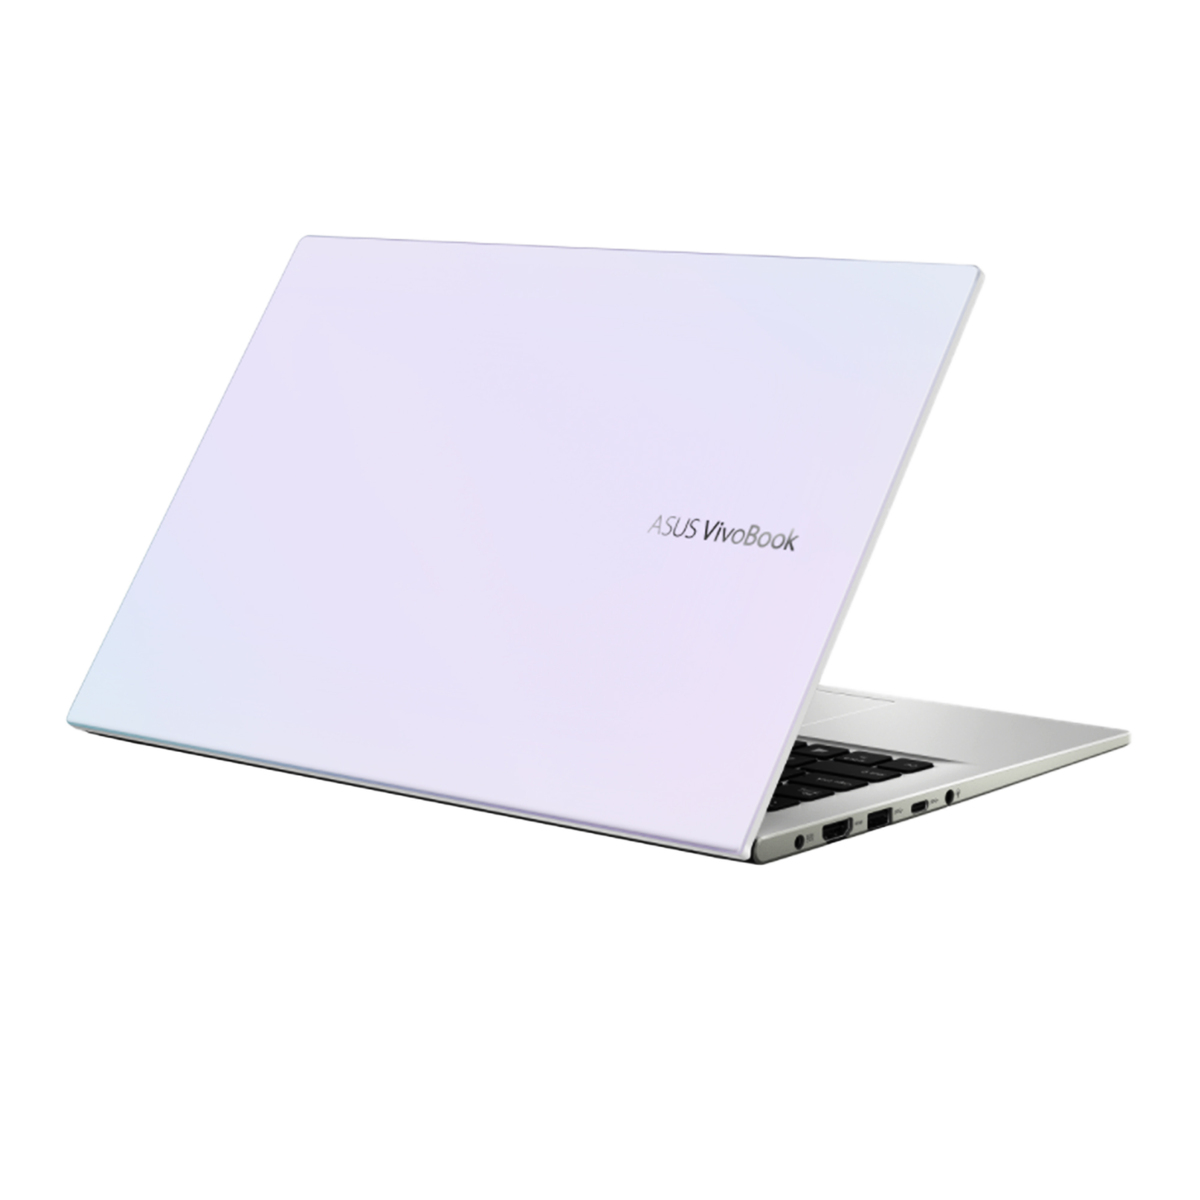 ASUS Notebook X413JA-211.VBWB Dreamy White